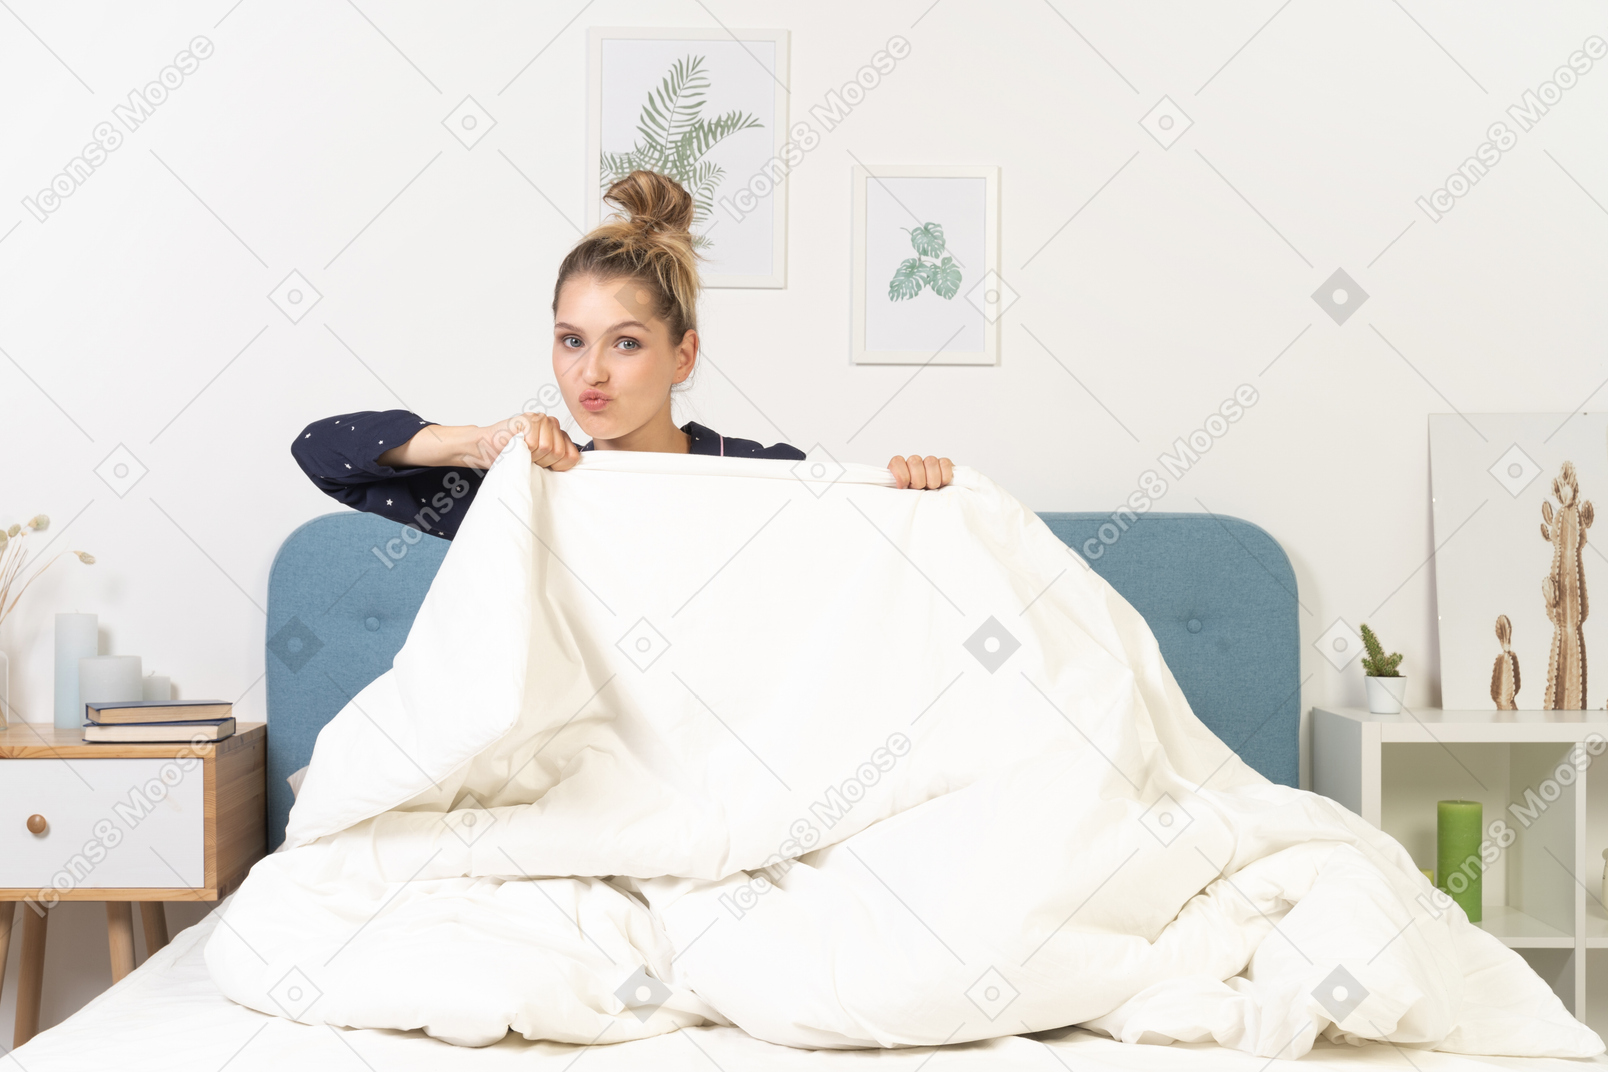 Vista frontal de una mujer joven haciendo muecas en pijama escondido detrás de la manta en la cama